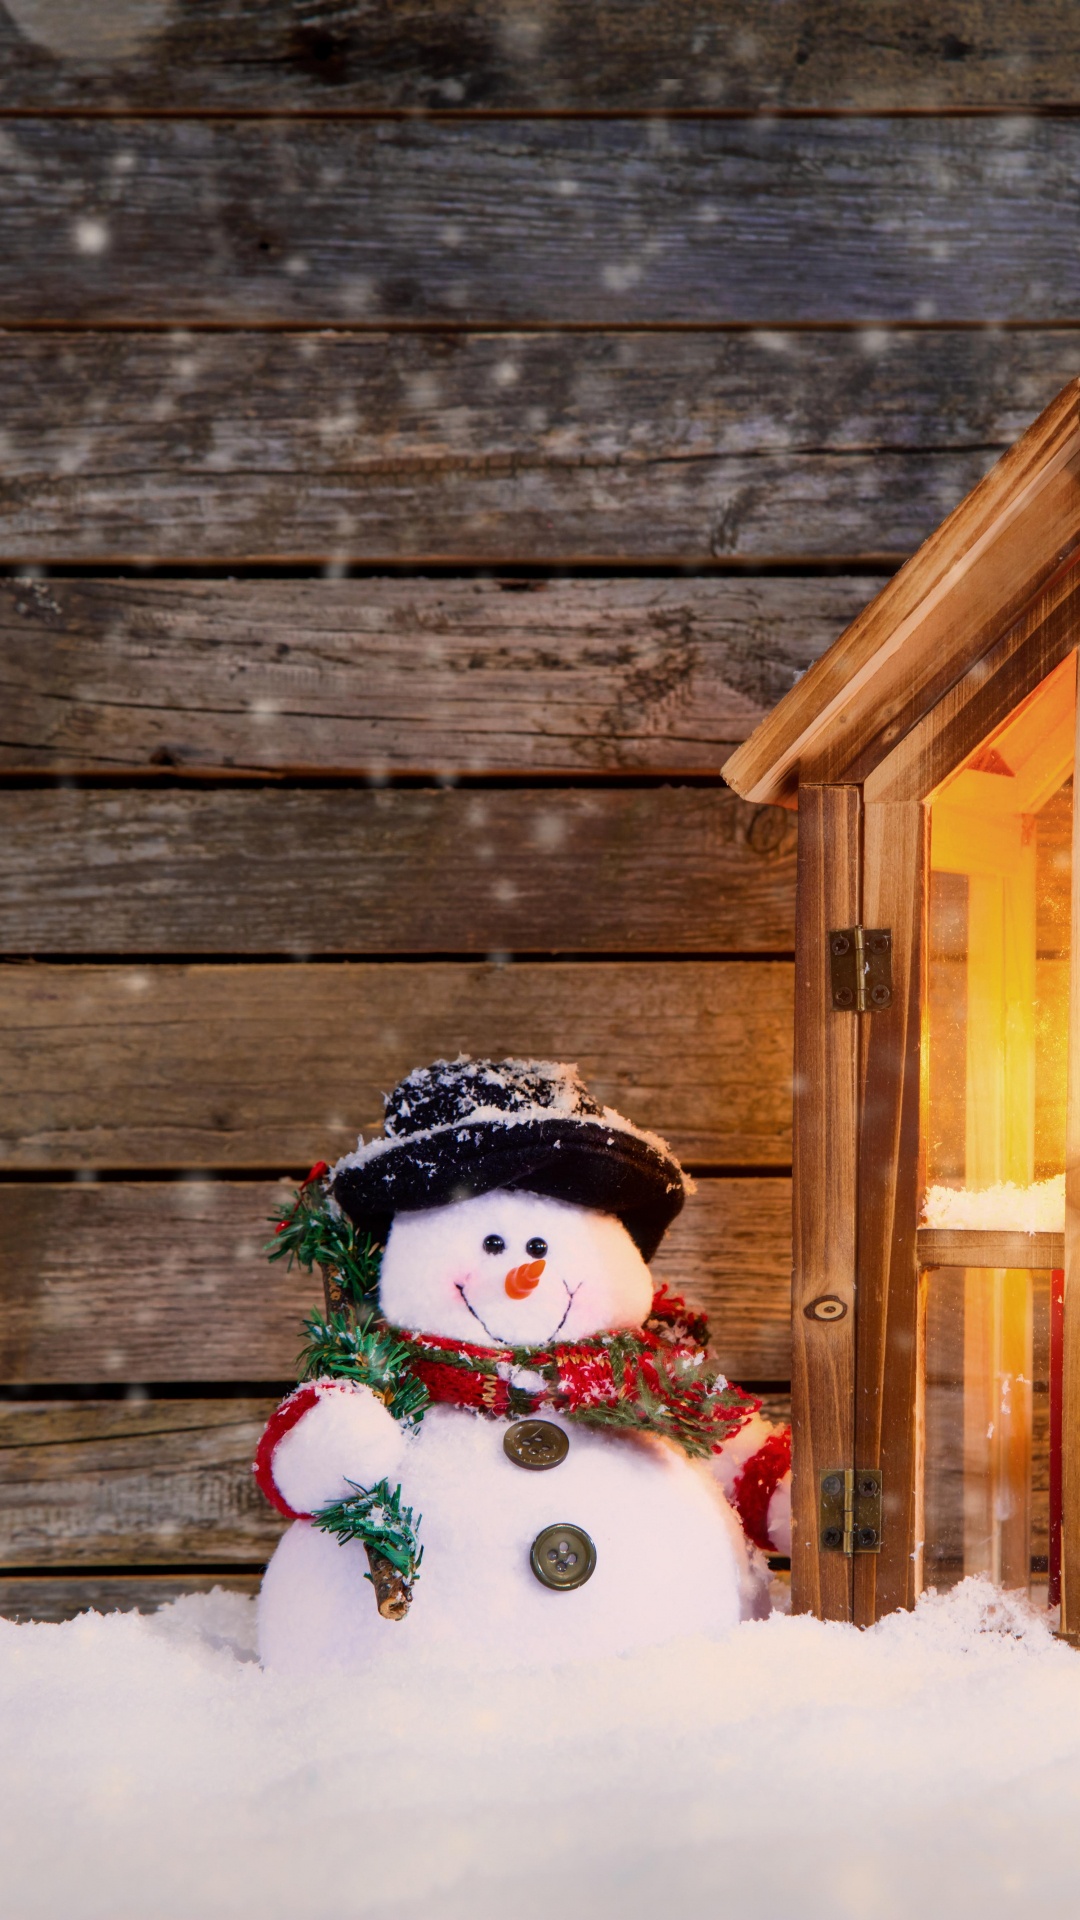 圣诞节那天, 雪人, 圣诞装饰, 圣诞节的装饰品, 冬天 壁纸 1080x1920 允许